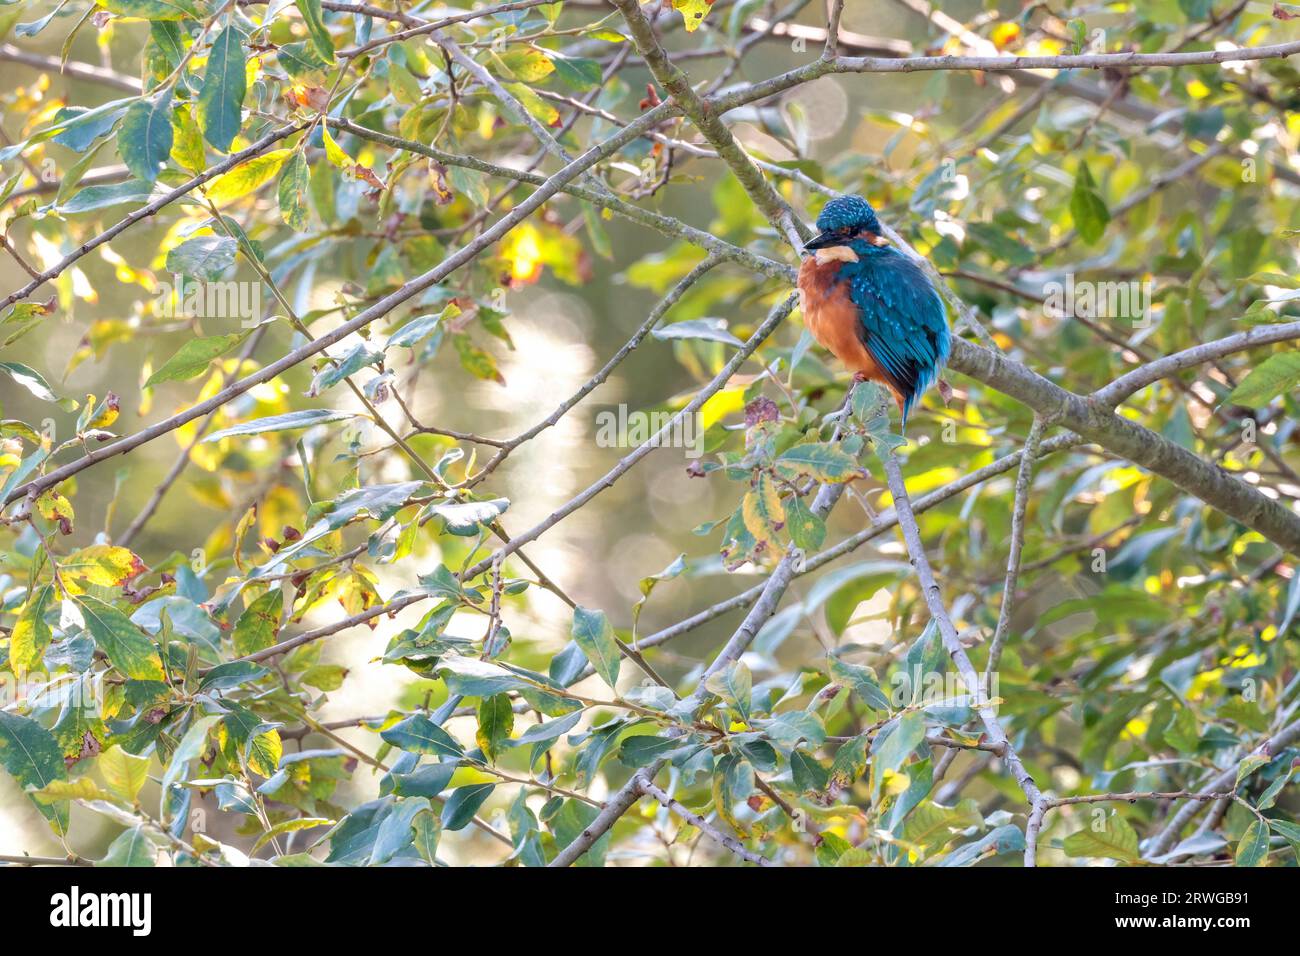 KingFisher Alcedo atthis, scintillante colorato uccello subacqueo con guance arancioni, testa blu inferiore e ali dorso blu elettrico coda corta grande fattura Foto Stock